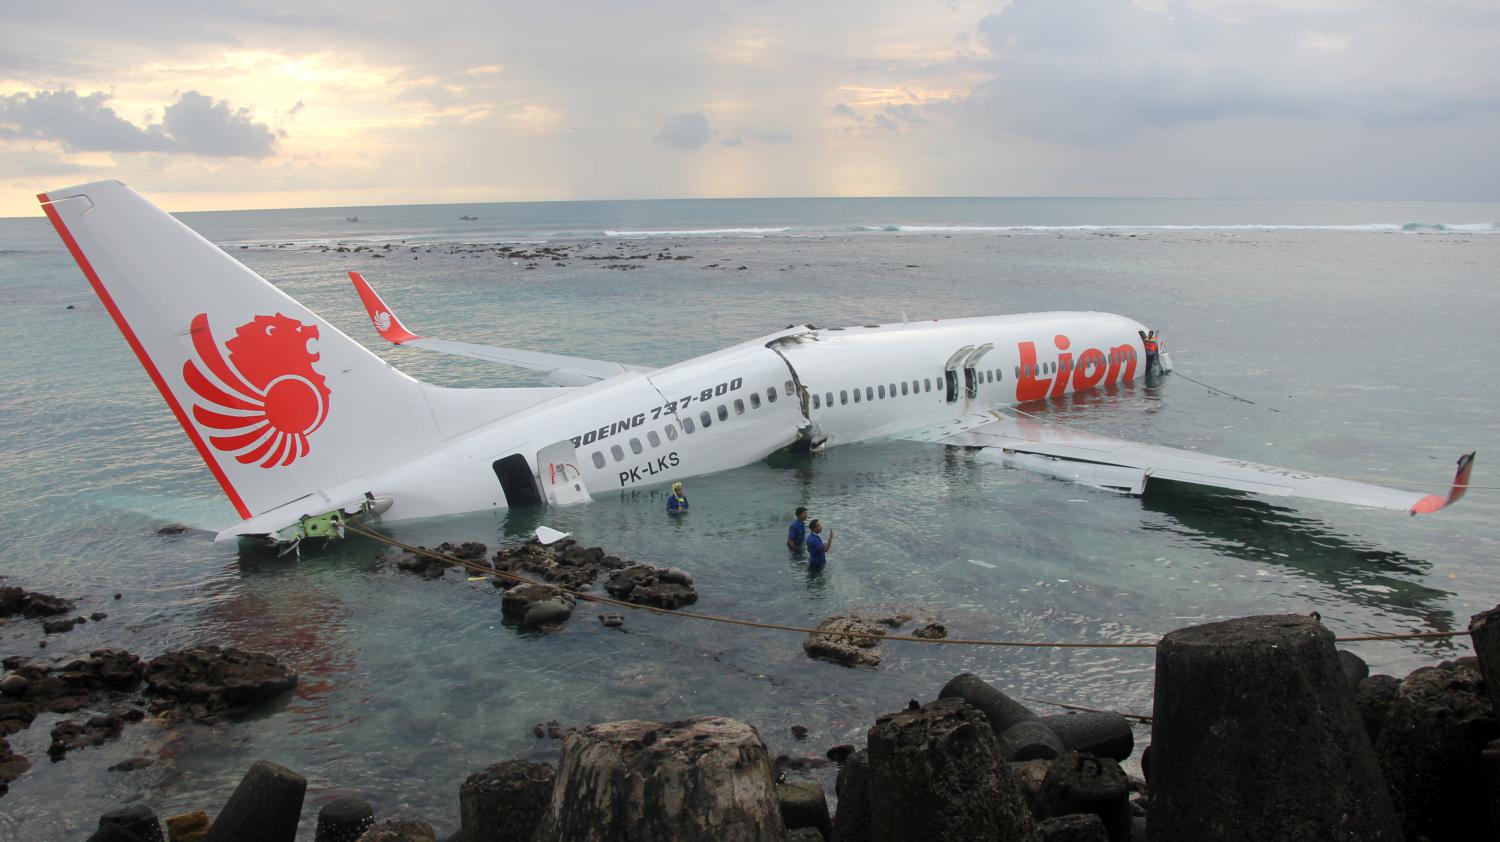 Un avion indonésien s'écrase en mer avec 189 personnes à bord